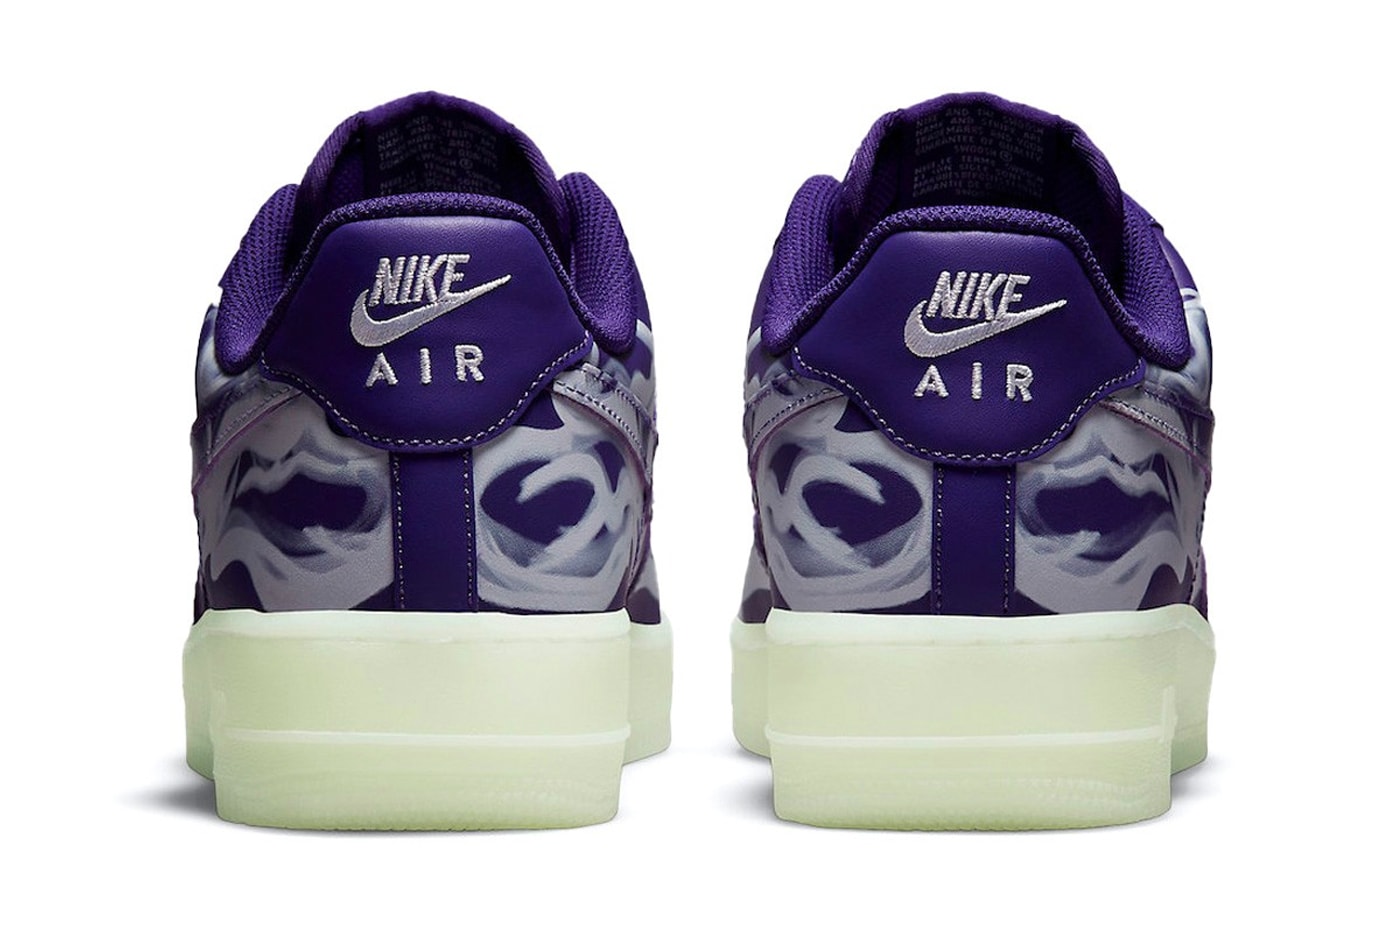 Nike Air Force 1 Skeleton "Purple Punch" Sneaker